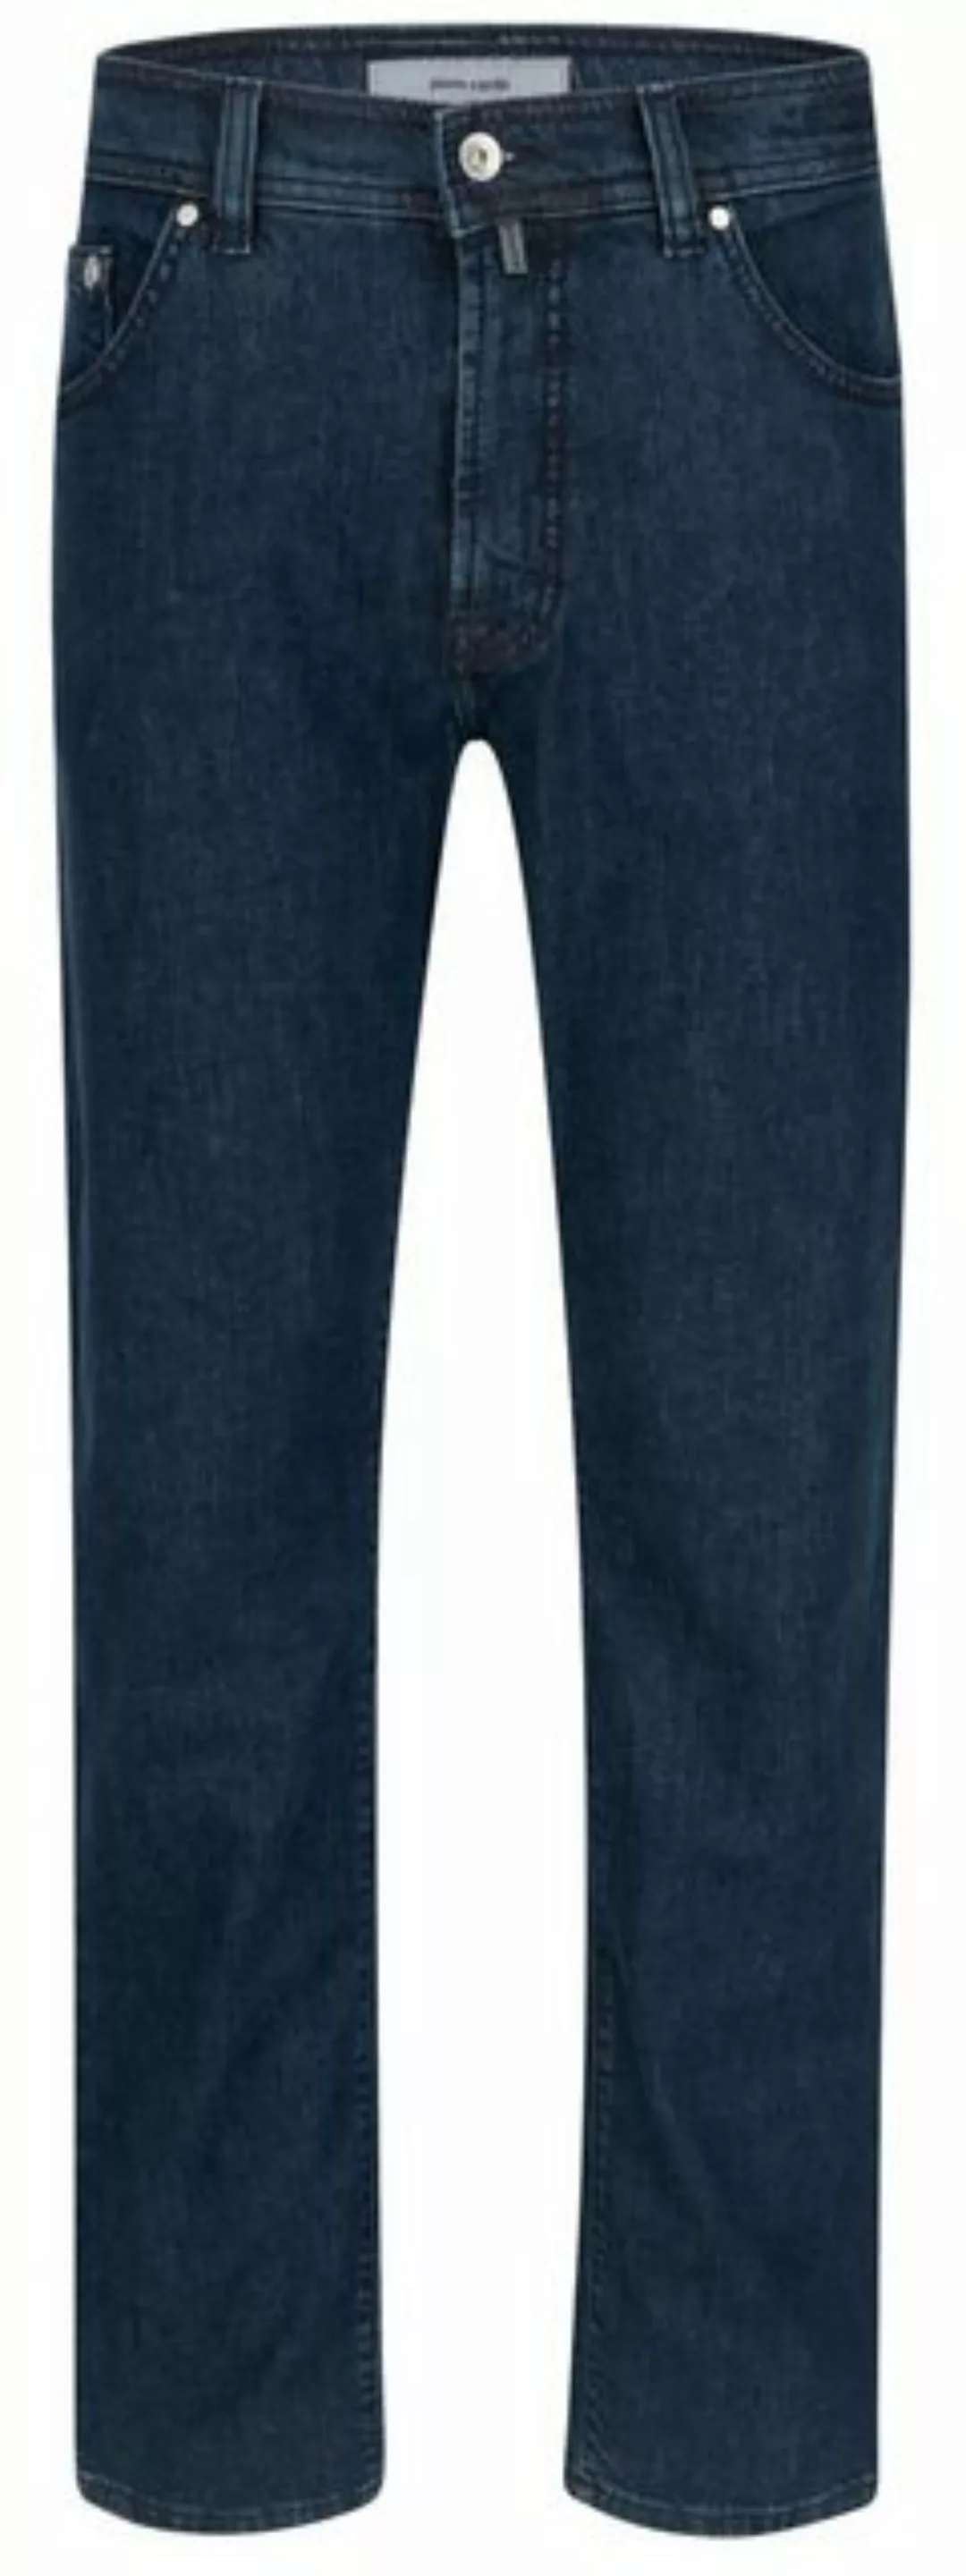 Pierre Cardin 5-Pocket-Jeans PIERRE CARDIN DEAUVILLE blue stonewash 31960 8 günstig online kaufen